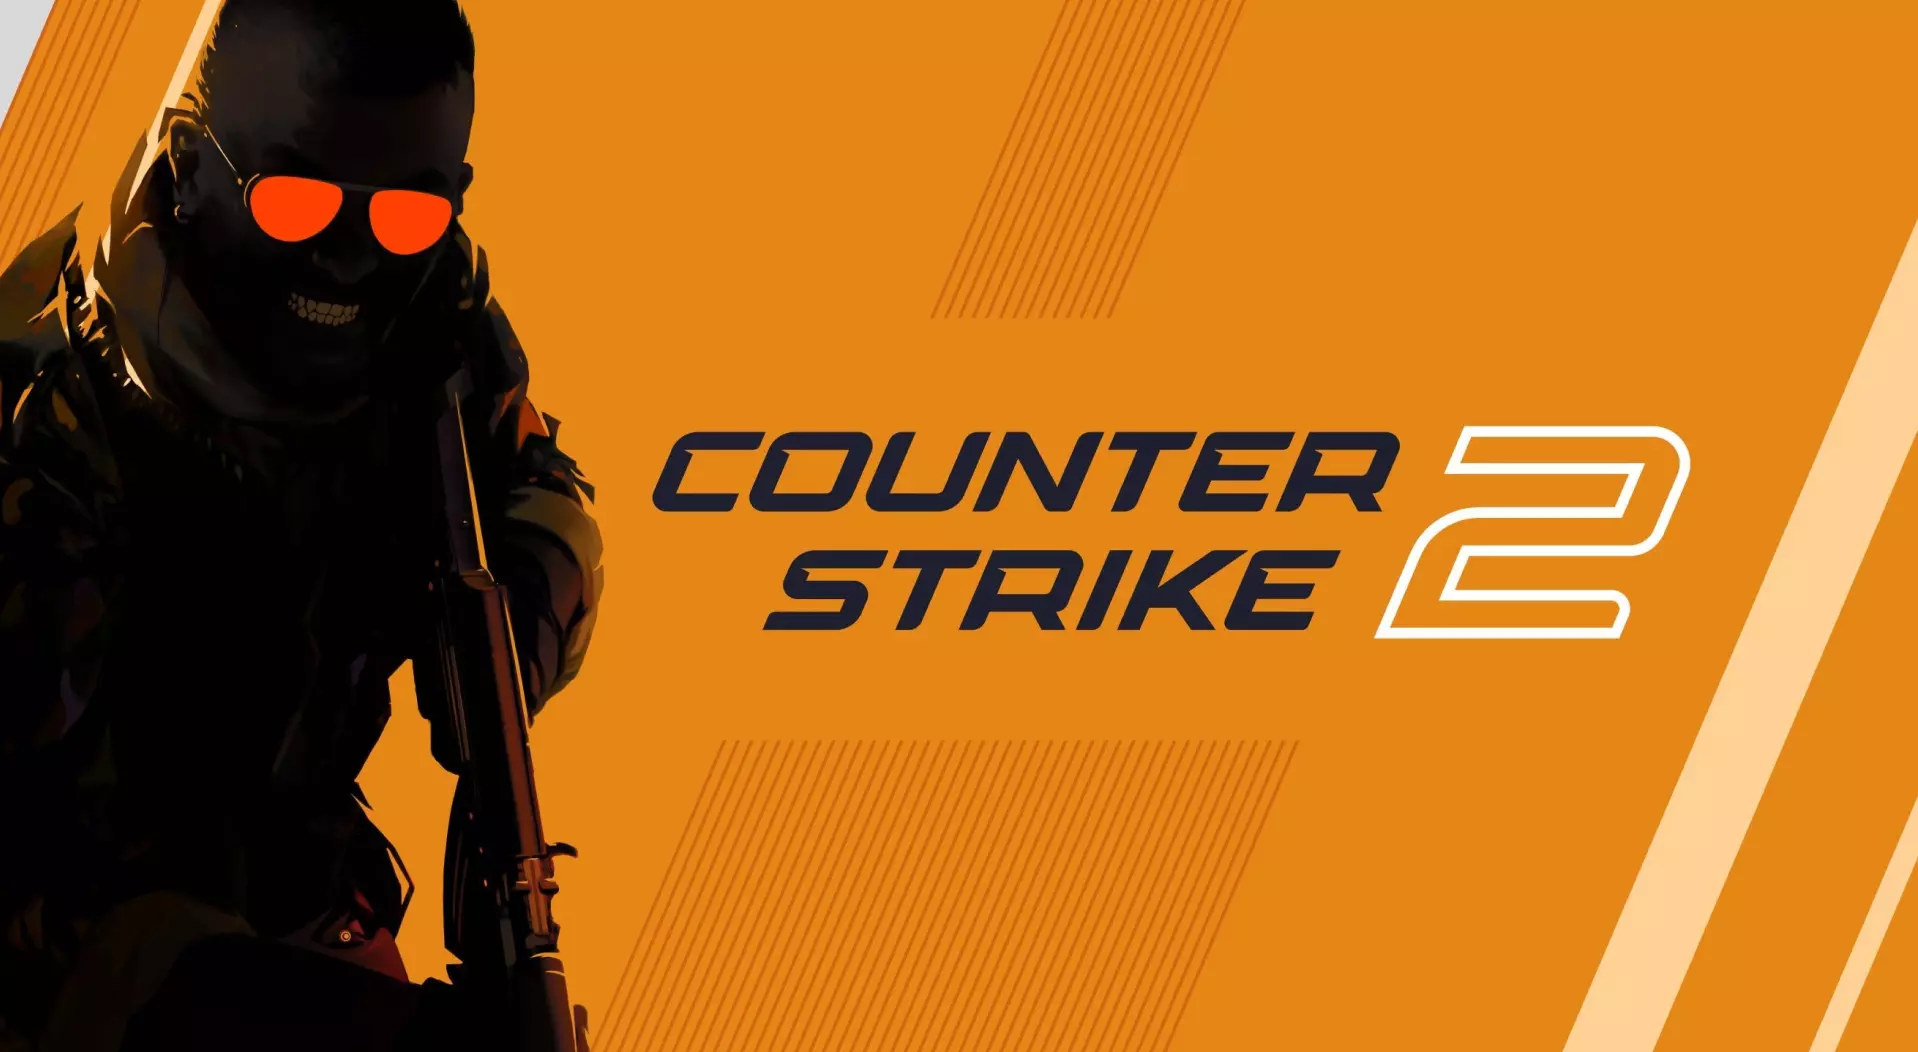 Valve lanza una importante actualización para Counter-Strike 2, que añade el modo de apuntar con la mano izquierda y mucho más.